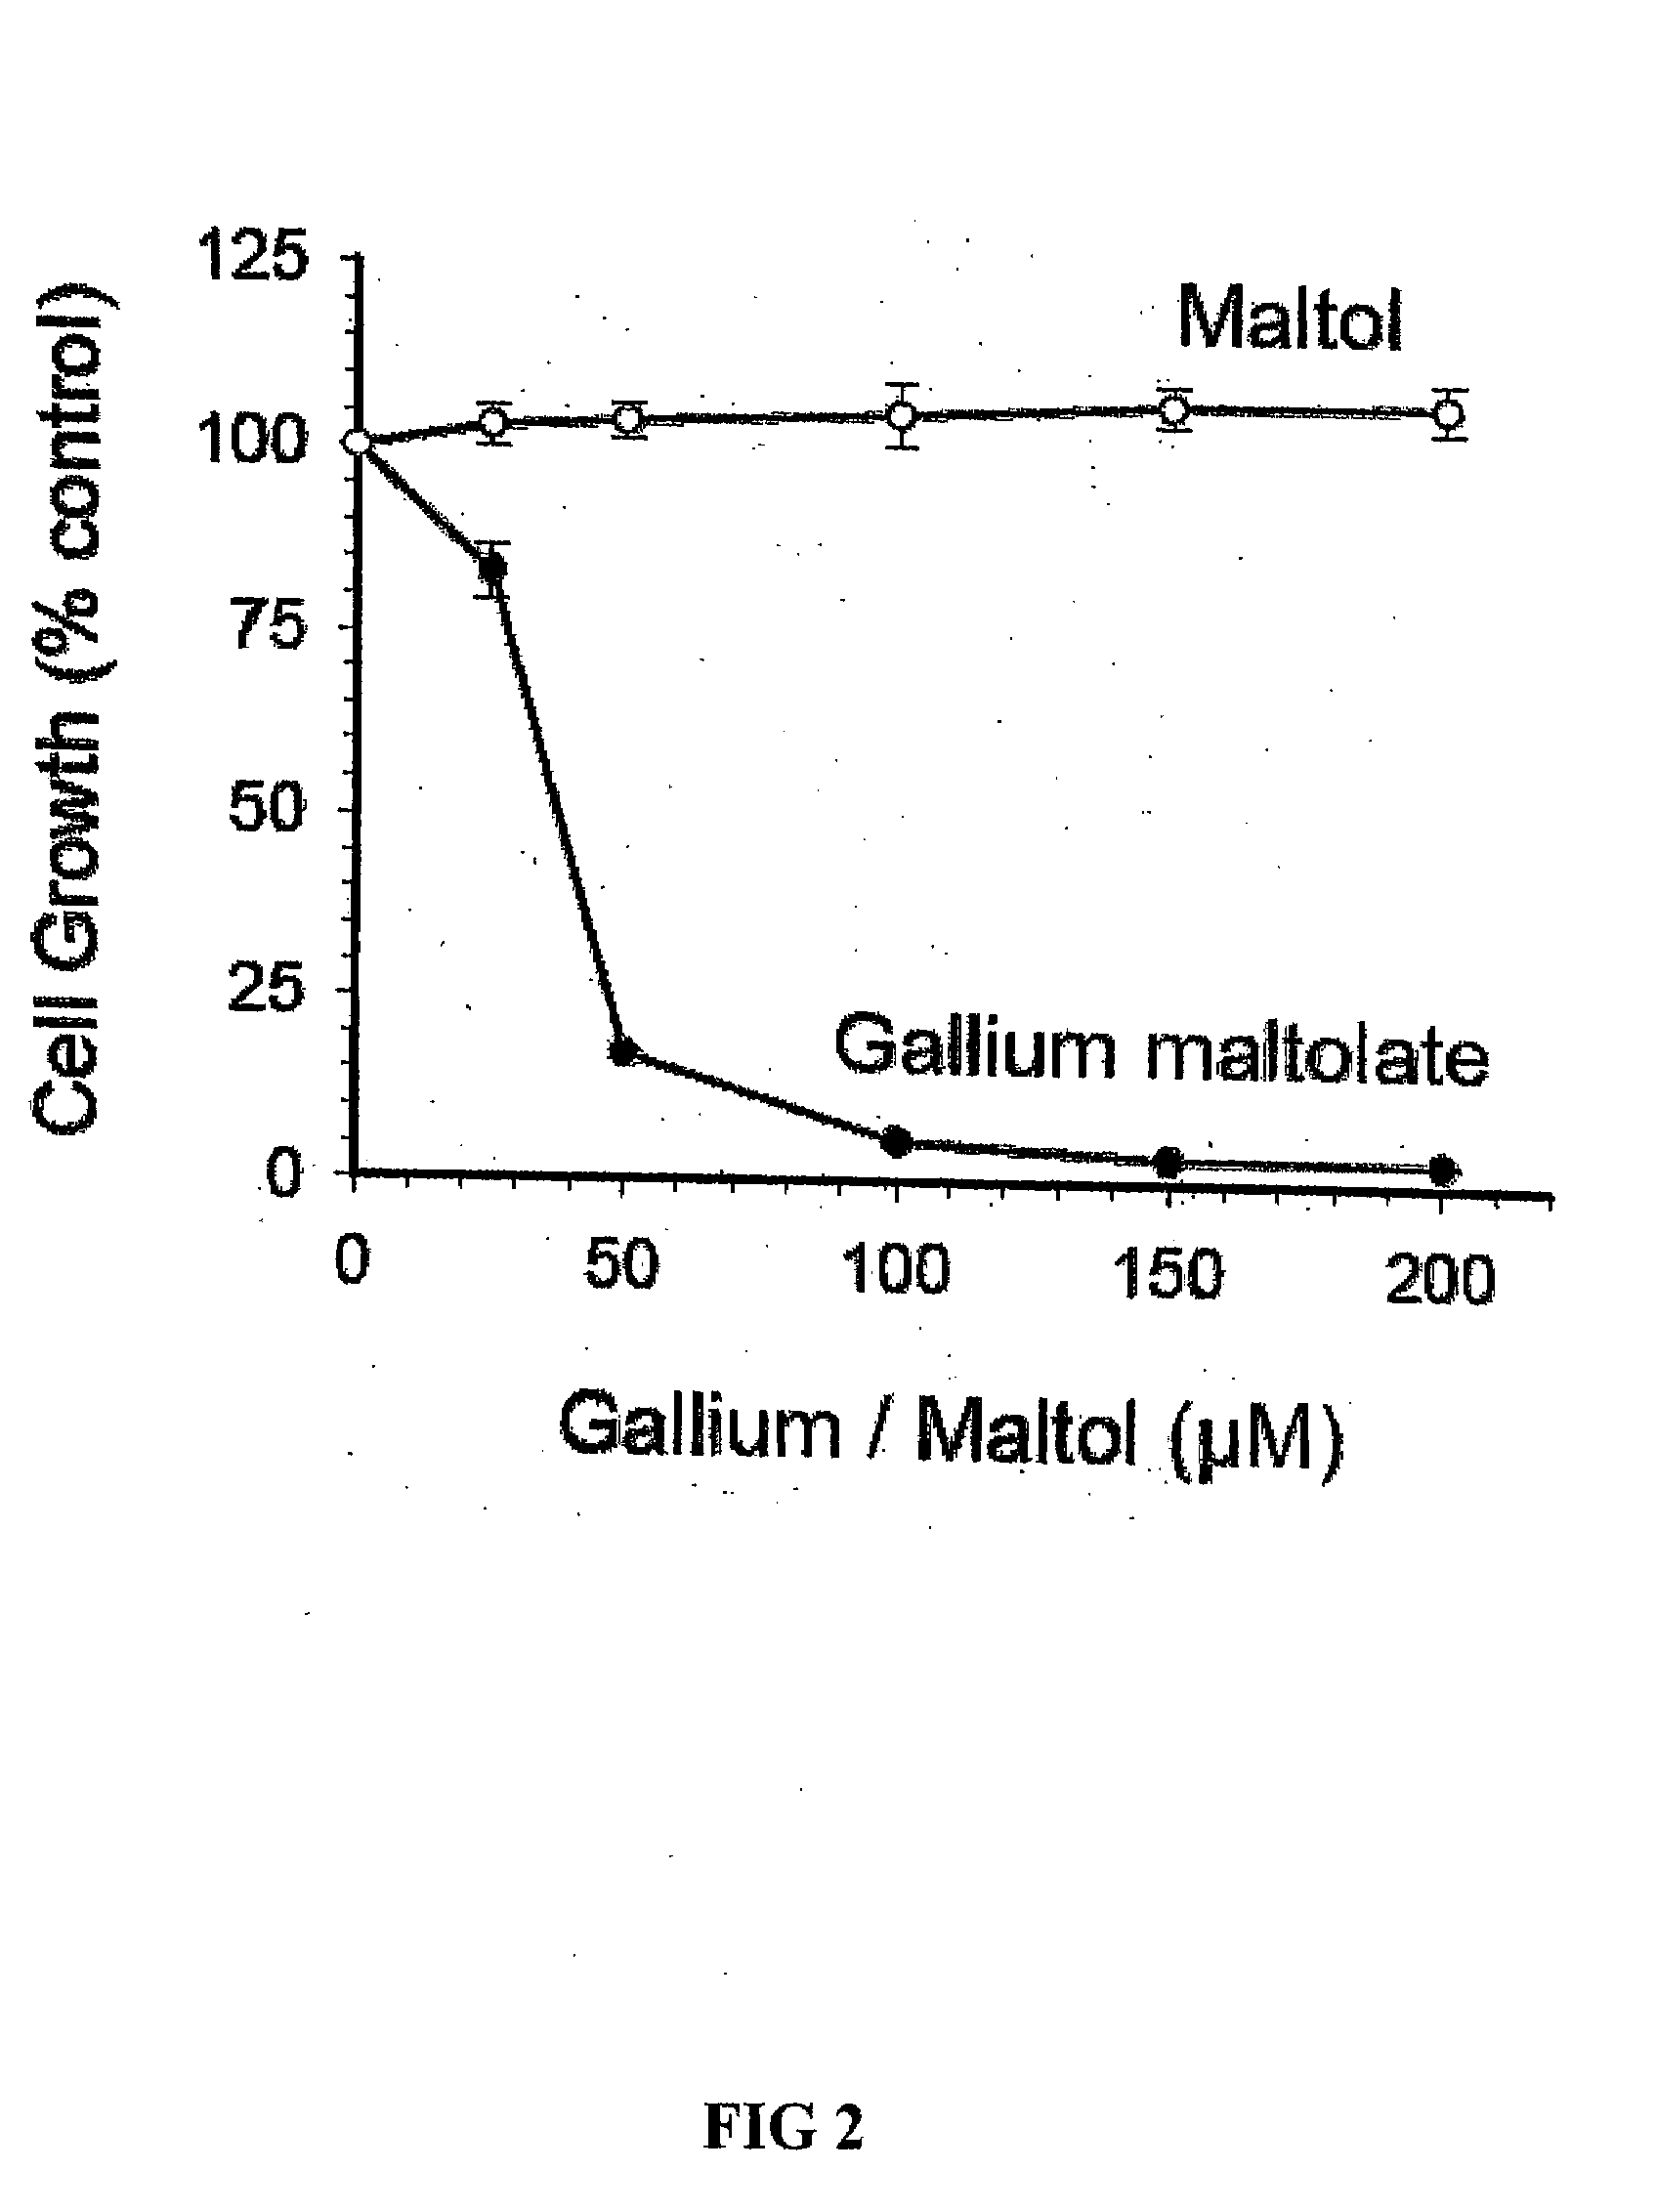 Method of treating gallium-nitrate resistant tumors using gallium-containing compounds